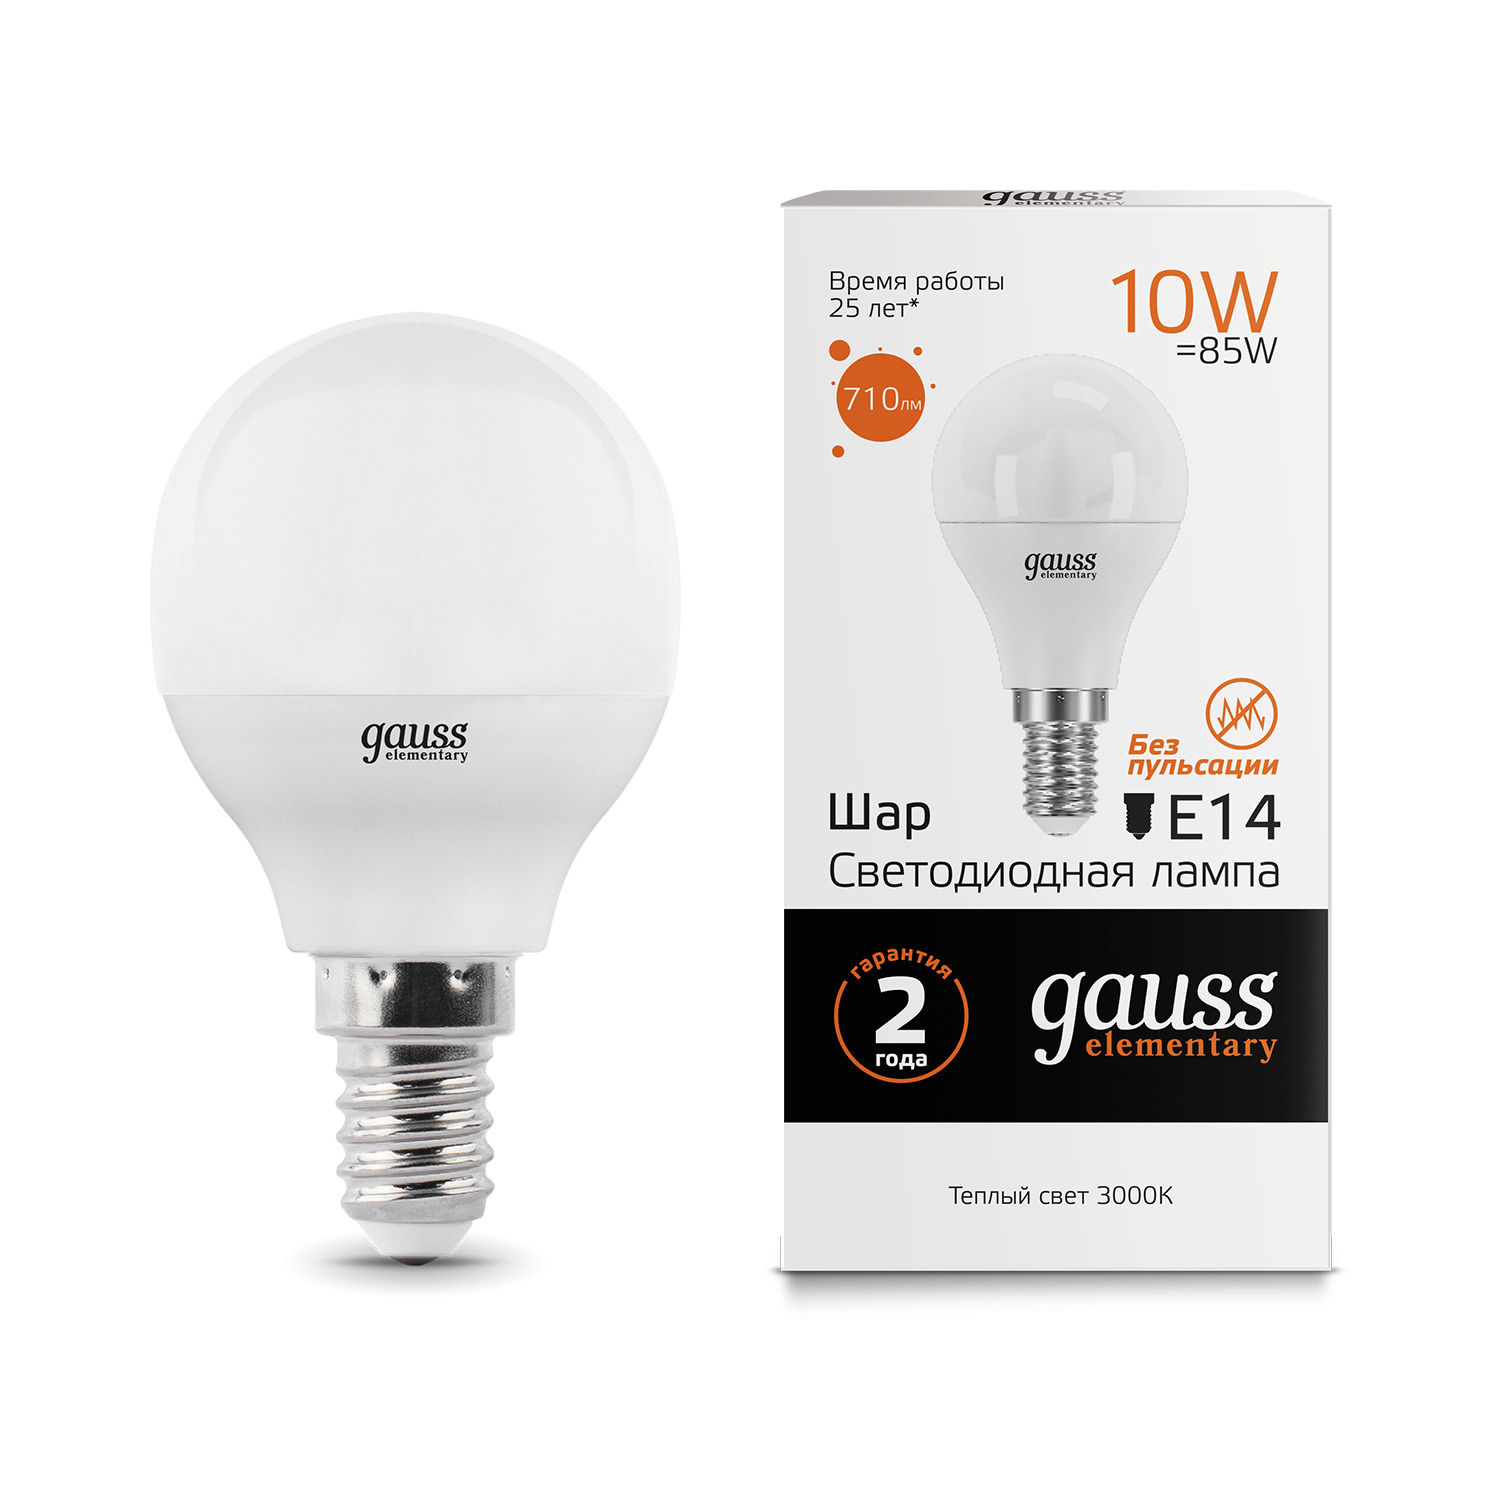 Лампа Gauss LED Elementary Globe 10W E14 3000K лампа gauss elementary r50 6w 450lm 3000k е14 led